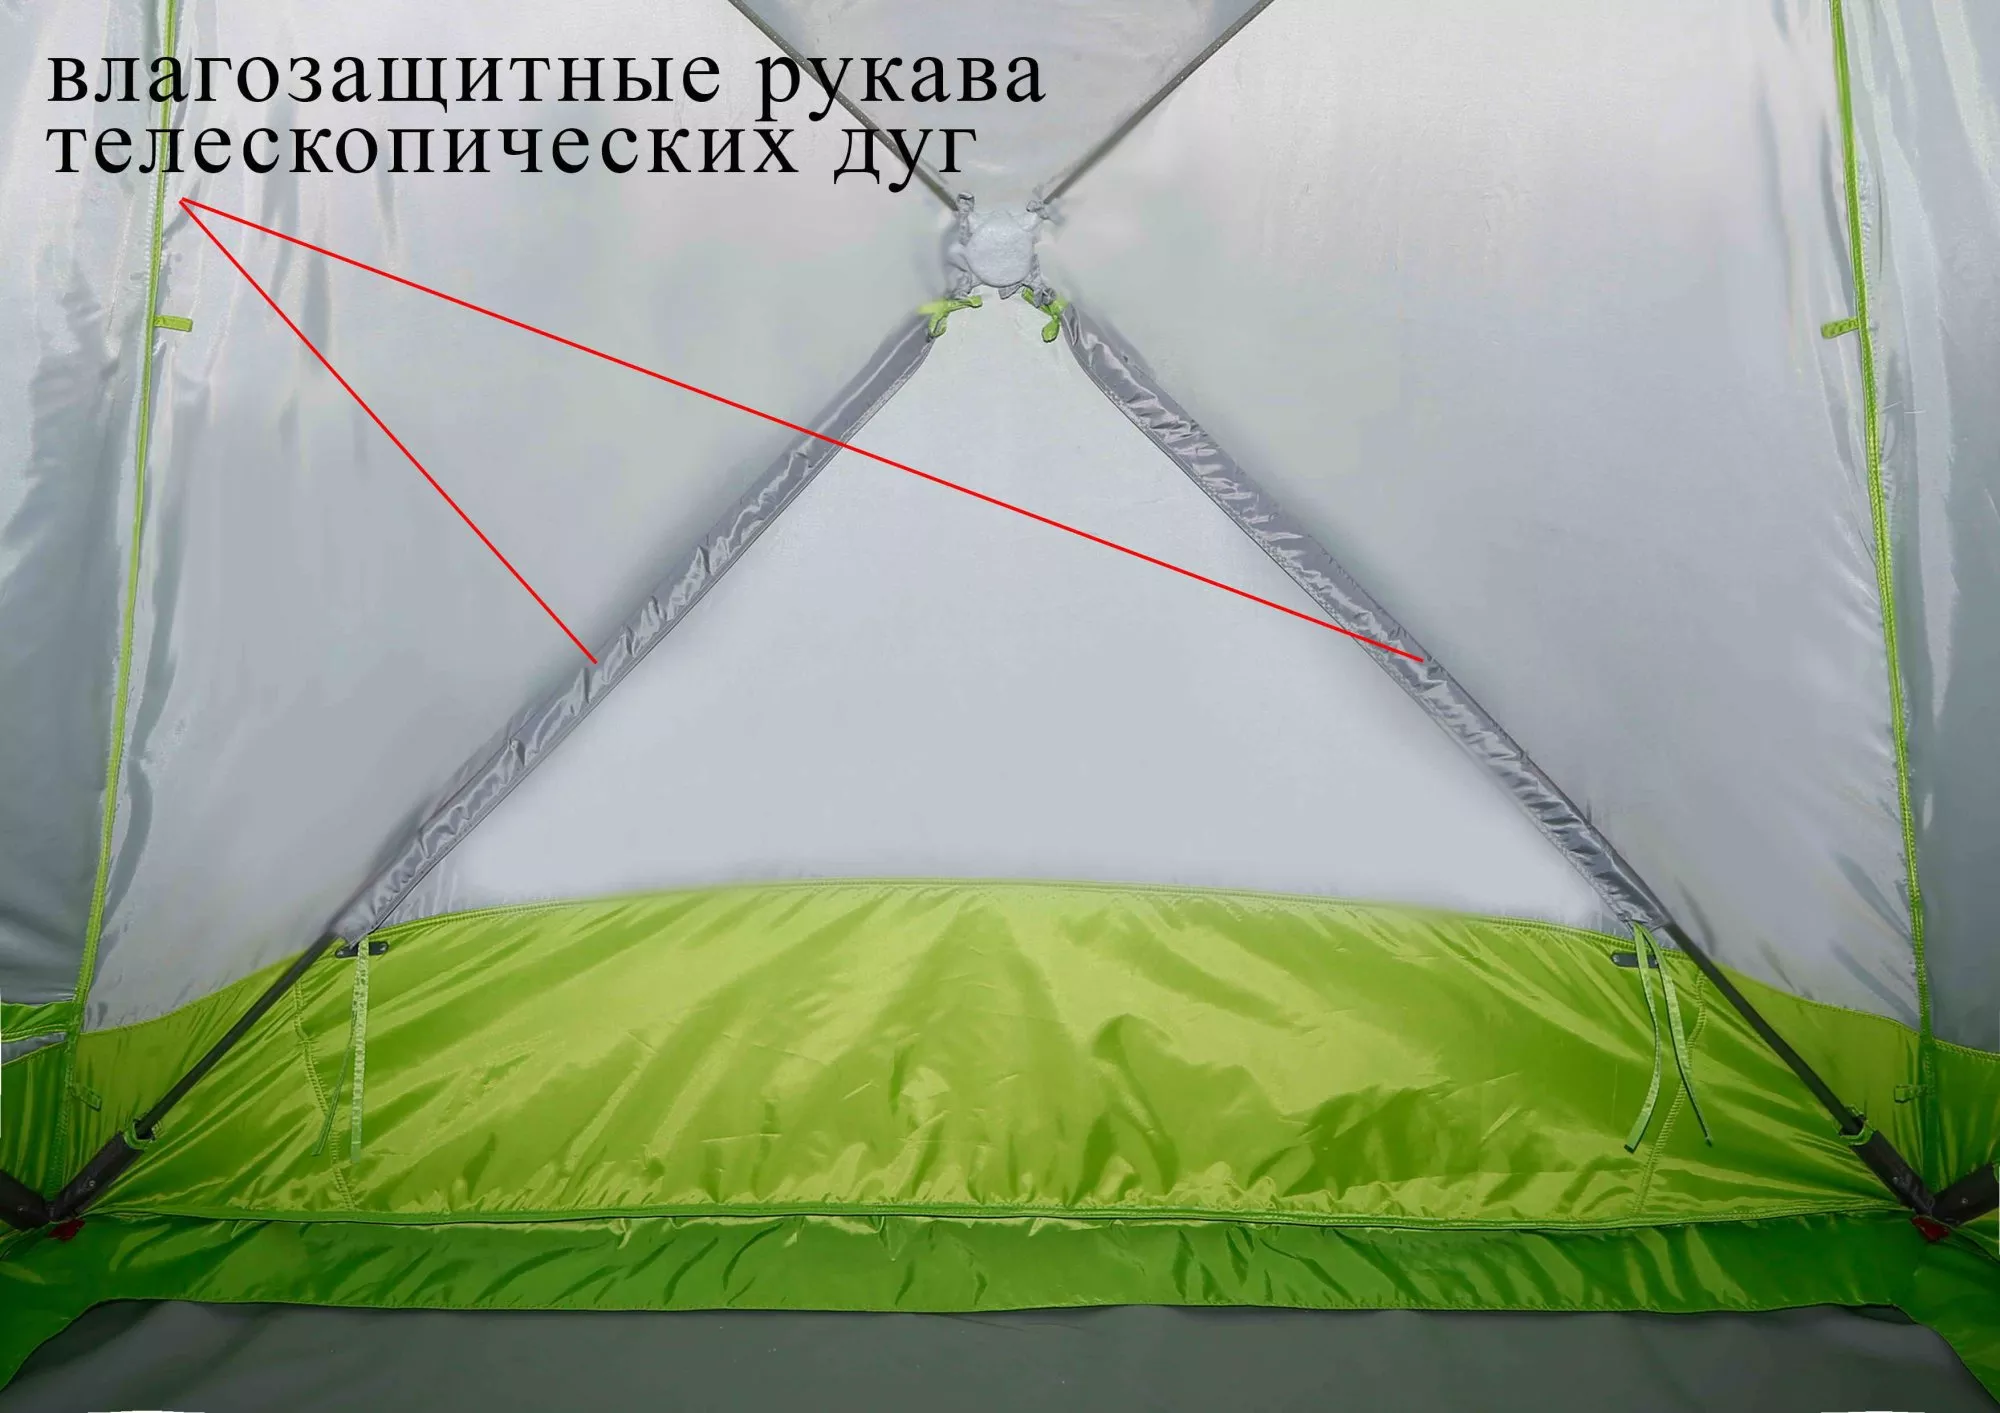 Зимняя палатка ЛОТОС Куб М2 Термо_влагозащитные рукава телескопических дуг